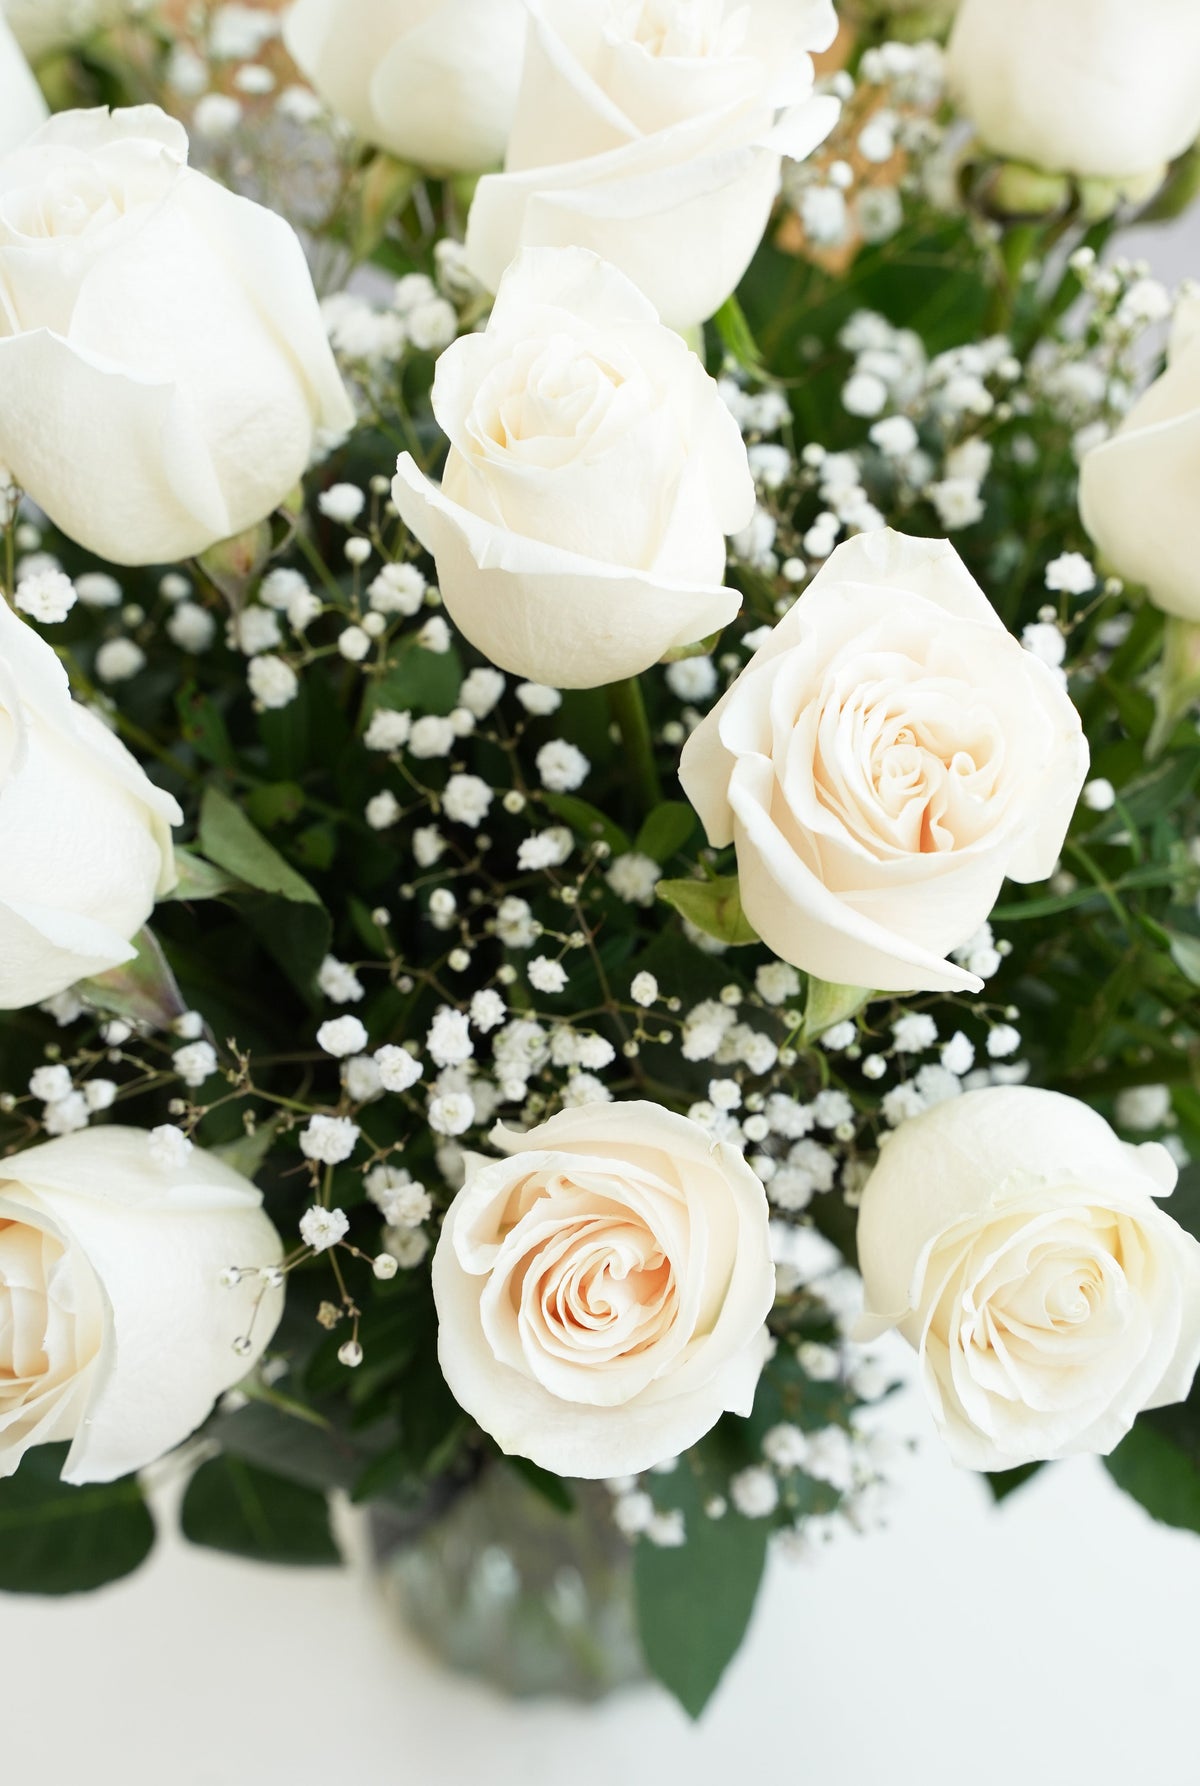 18 Long Stem White Roses - Vase